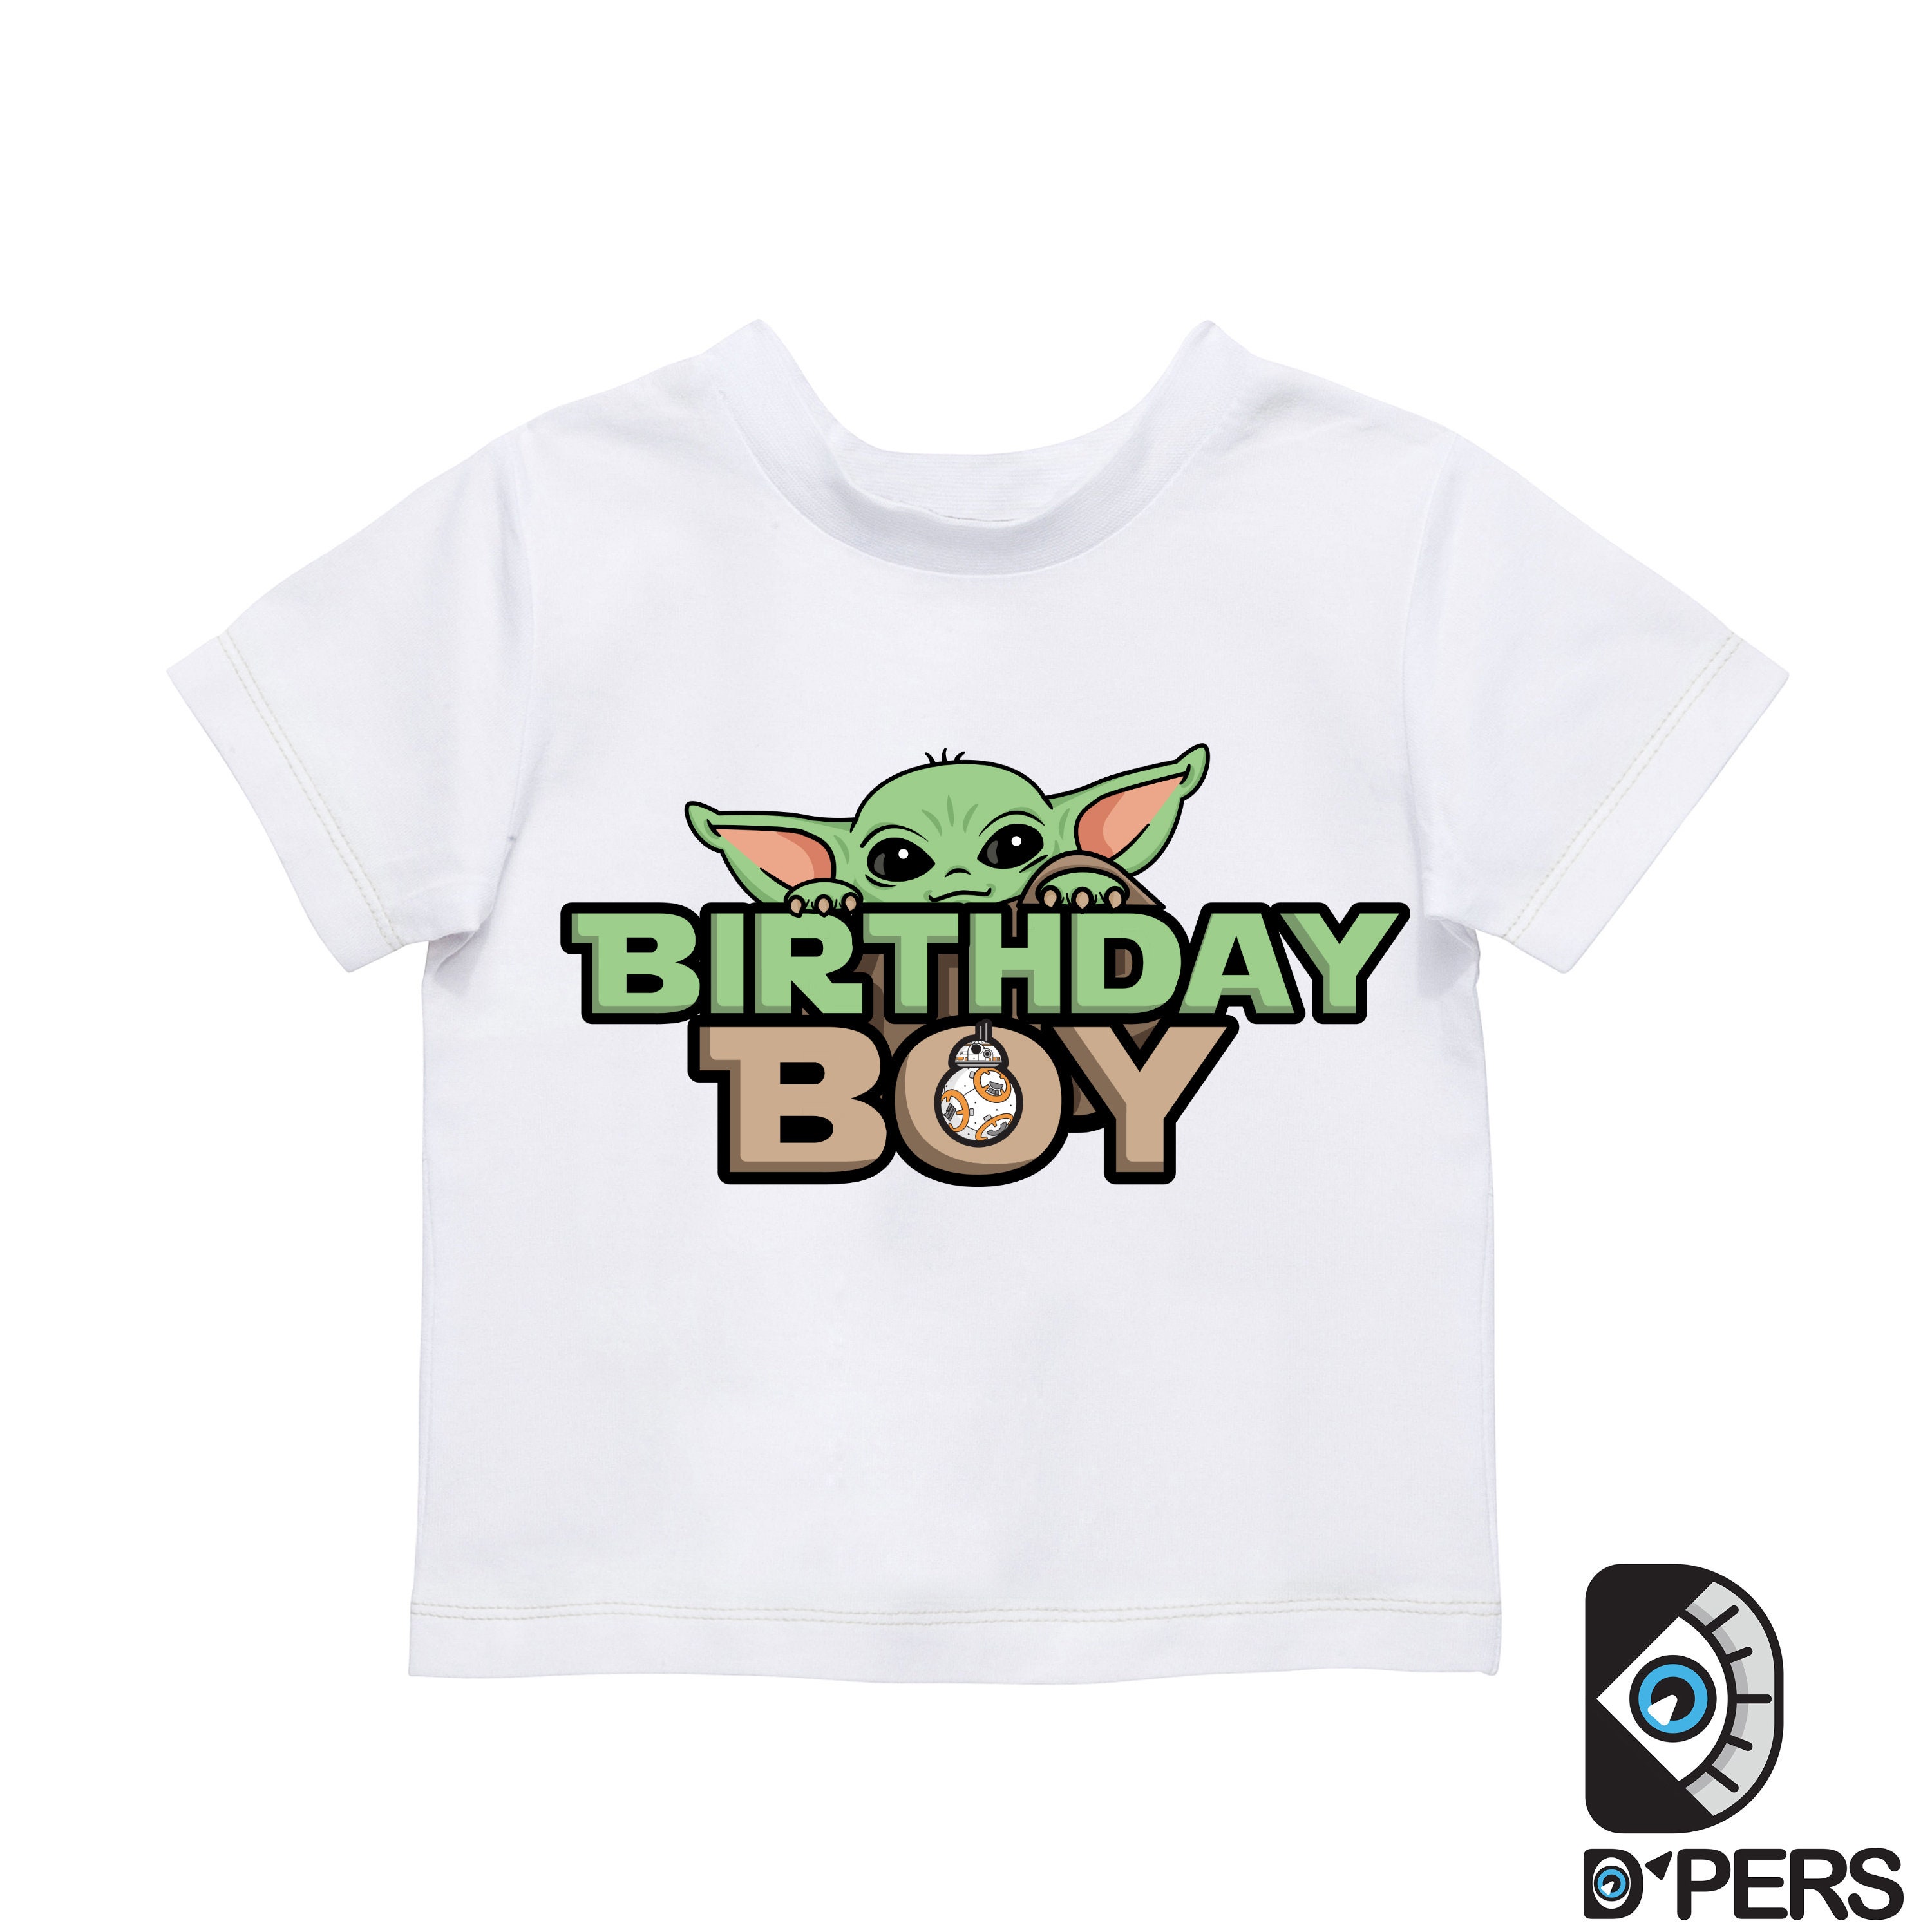 Star Wars Baby Yoda Birthday Boy SVG Digital Graphic - Etsy